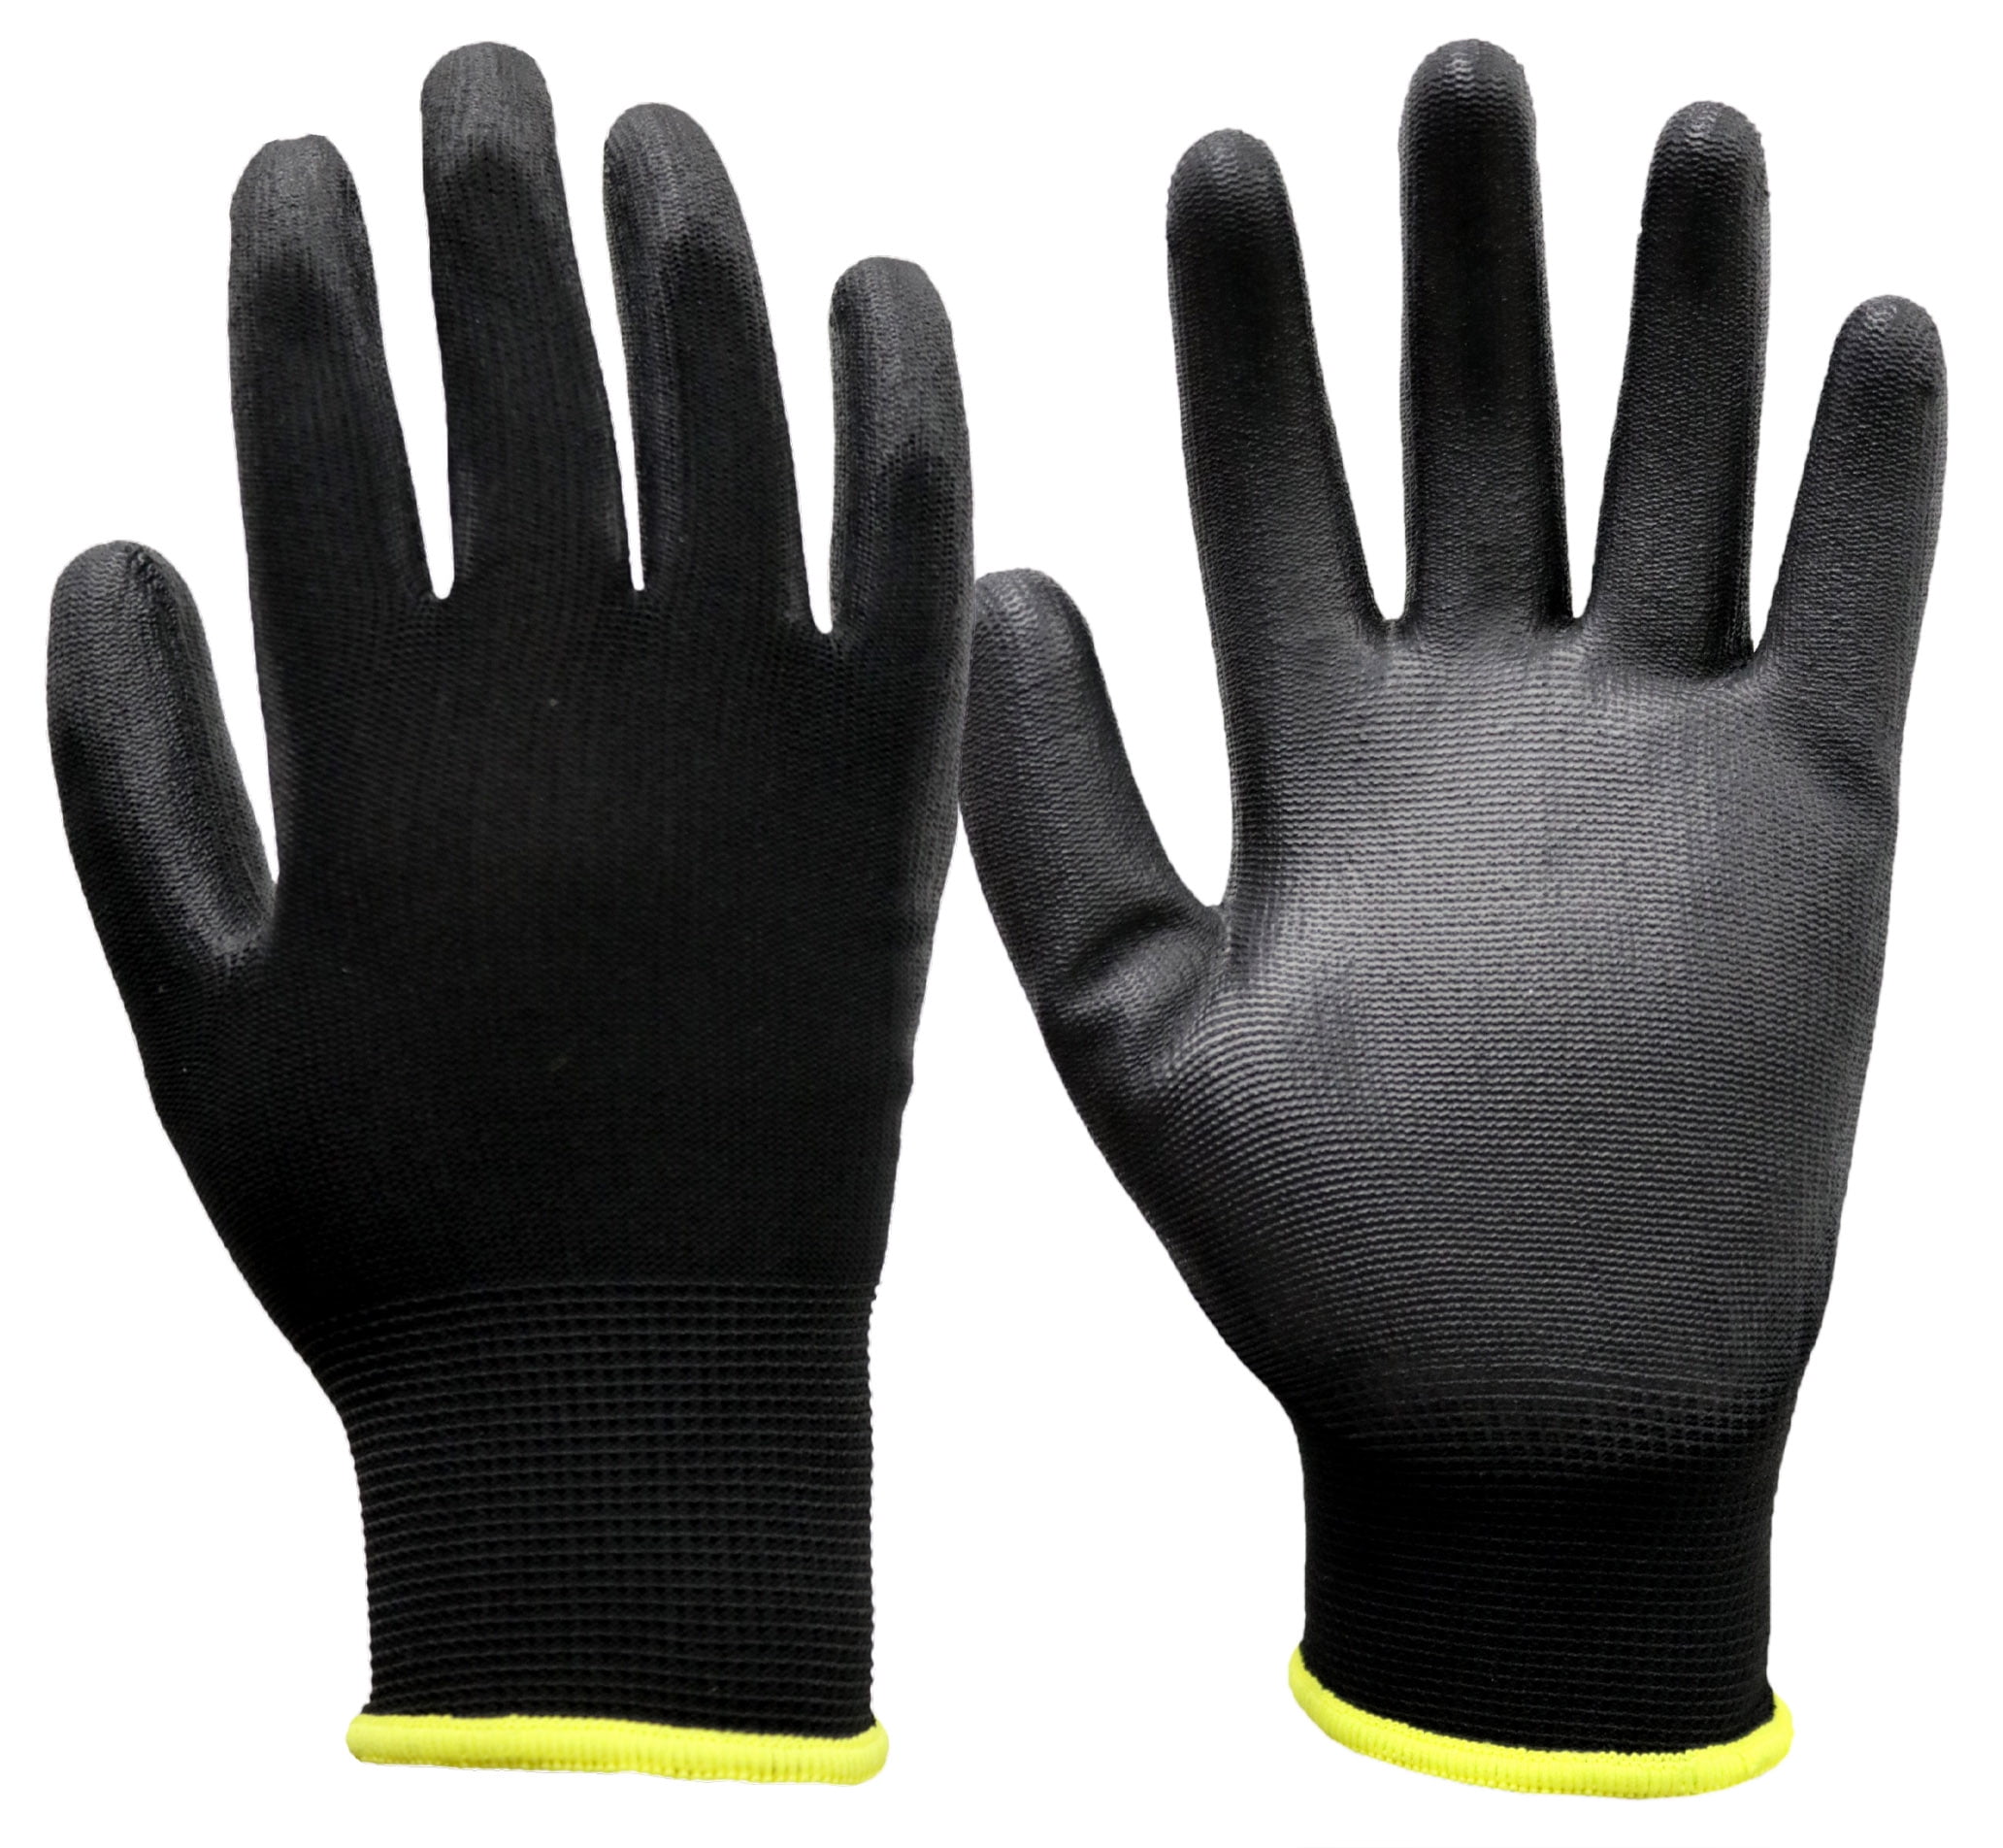 Deep II Grip Work Gloves For Men Accessories Gloves & Mittens Gardening & Work Gloves 